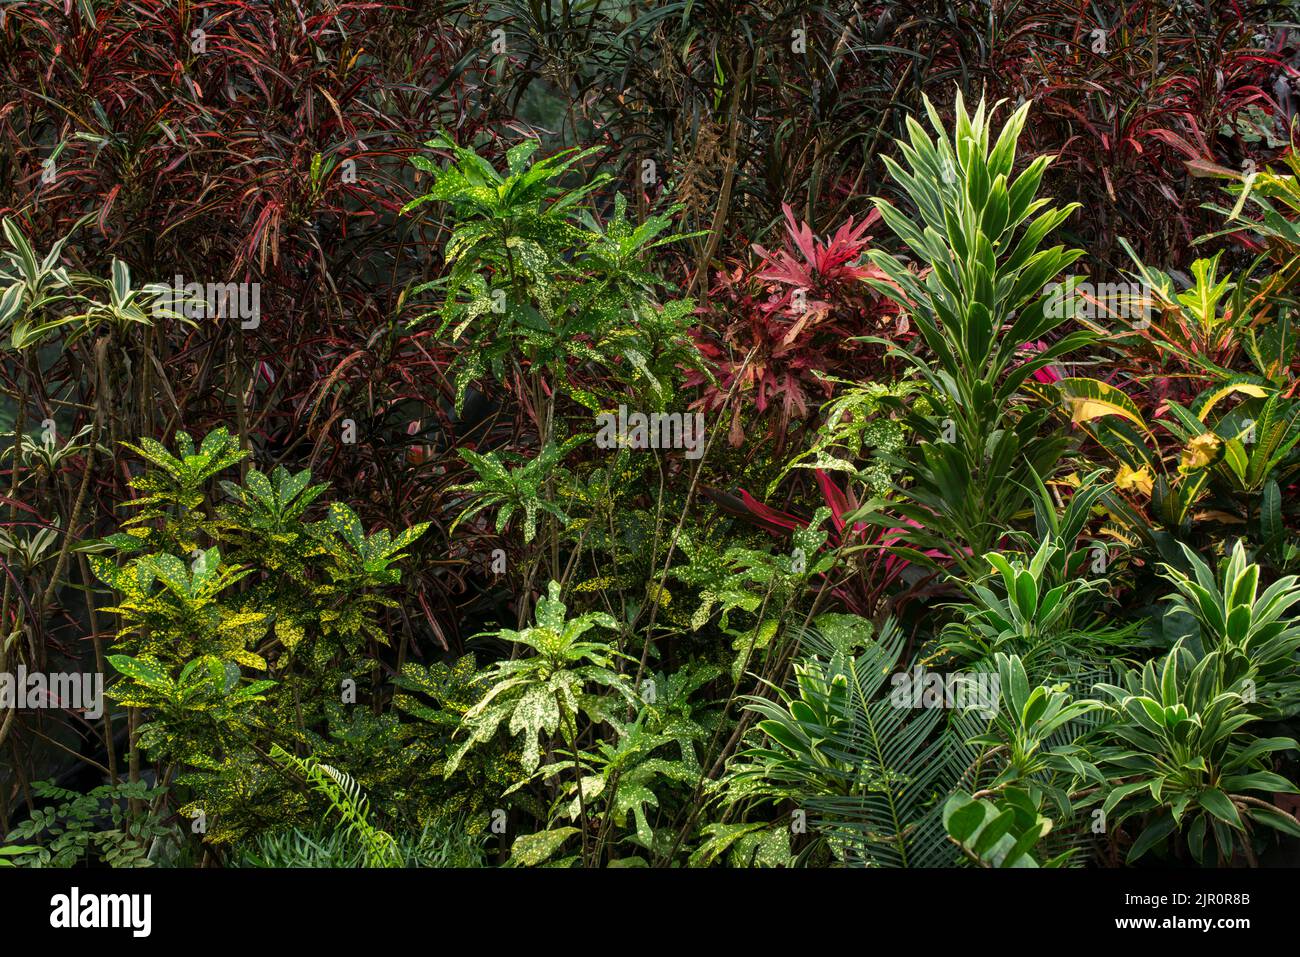 Plantes et arbres poussant dans une serre tropicale - photo de stock Banque D'Images